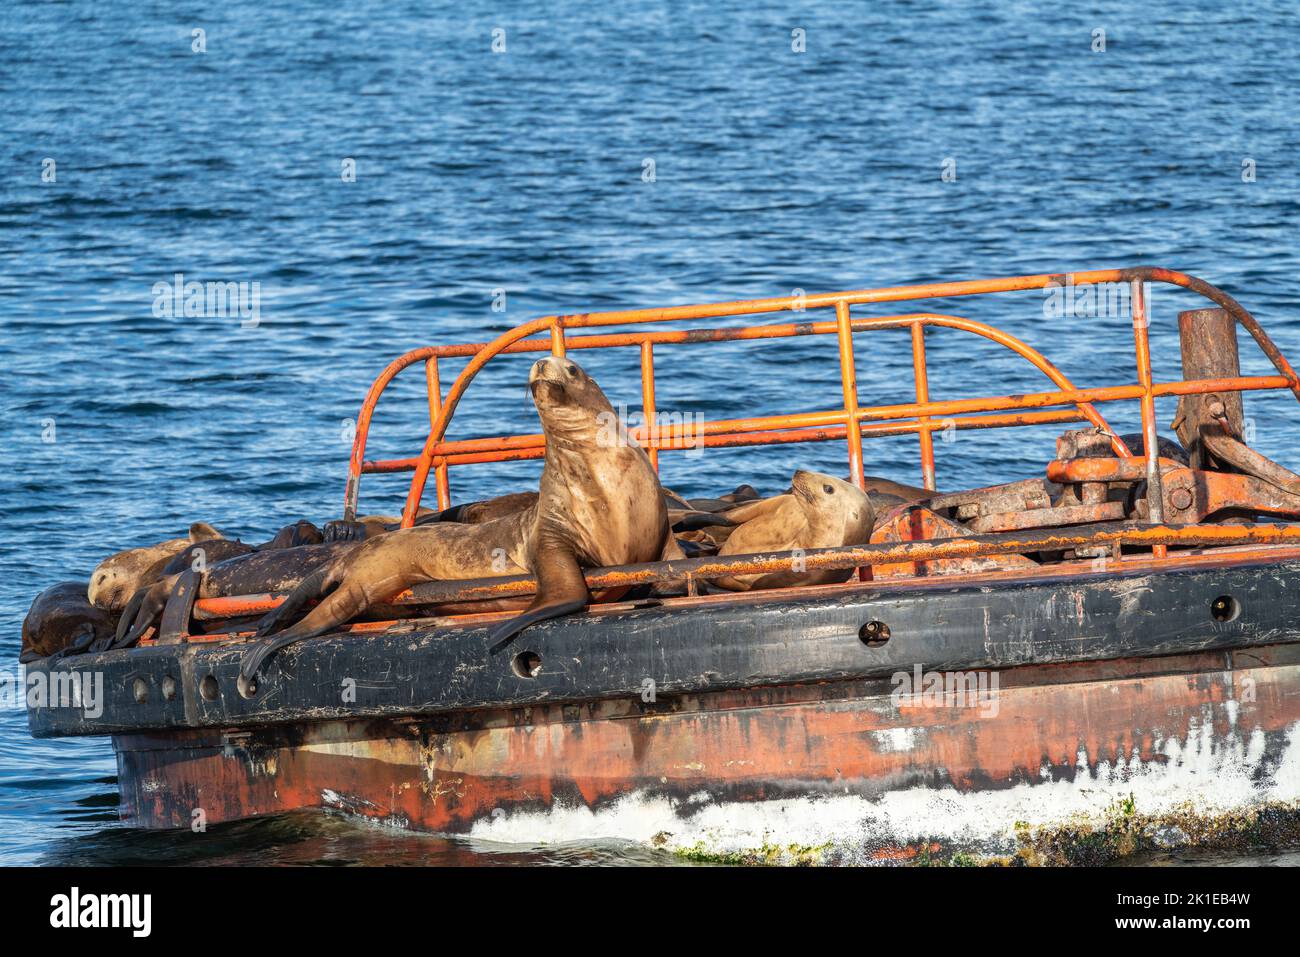 Un groupe de lions de mer de steller repose sur une plate-forme dans l'océan. Banque D'Images